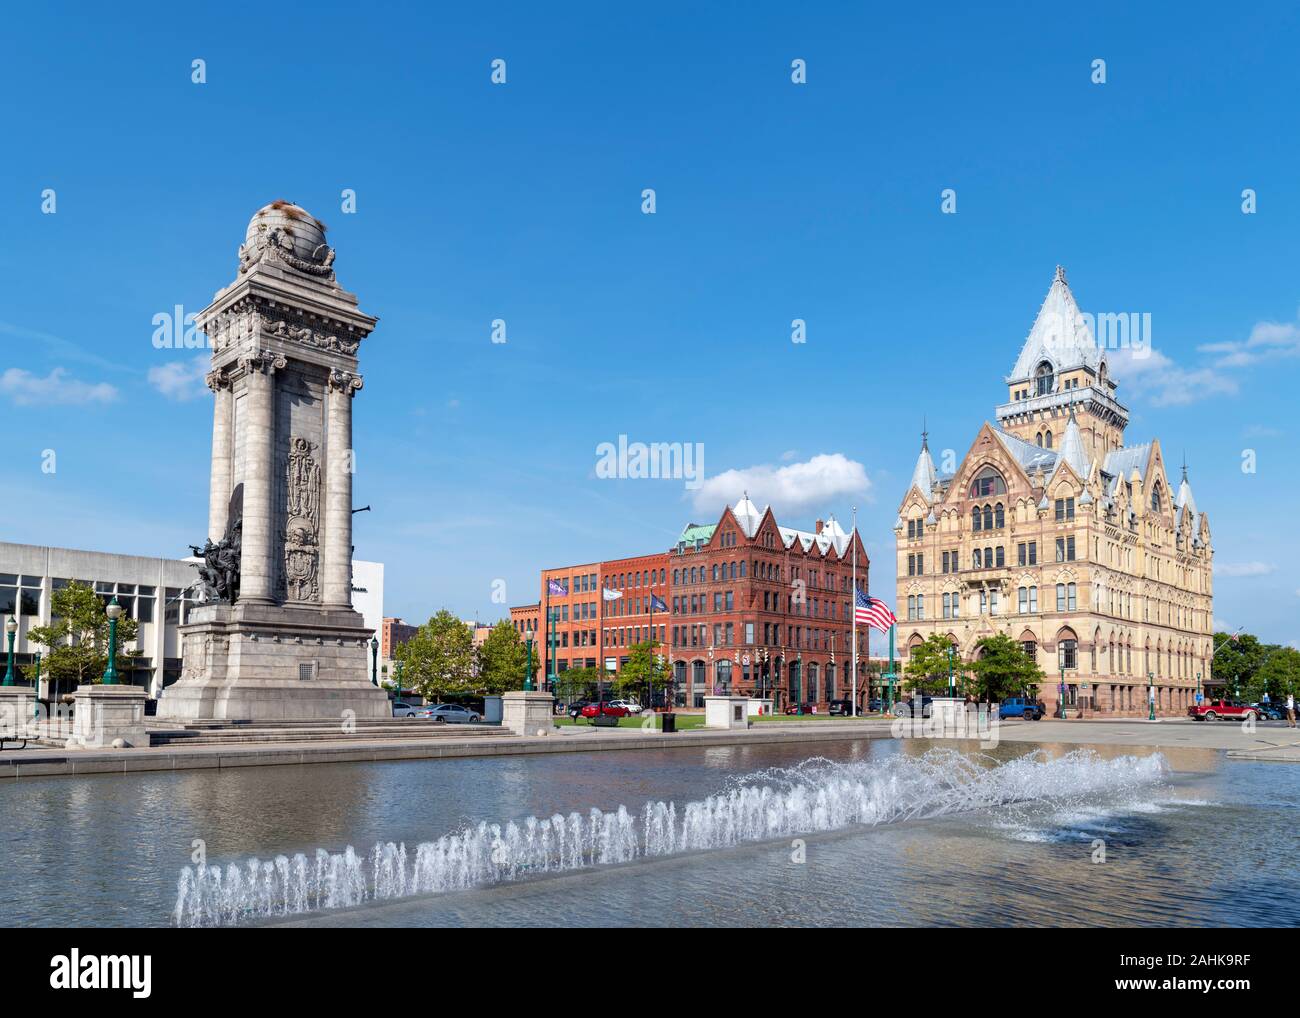 Clinton Square dans le centre-ville historique de Syracuse, New York State, USA. Les soldats et les marins'' Monument situé sur la gauche de la photo. Banque D'Images